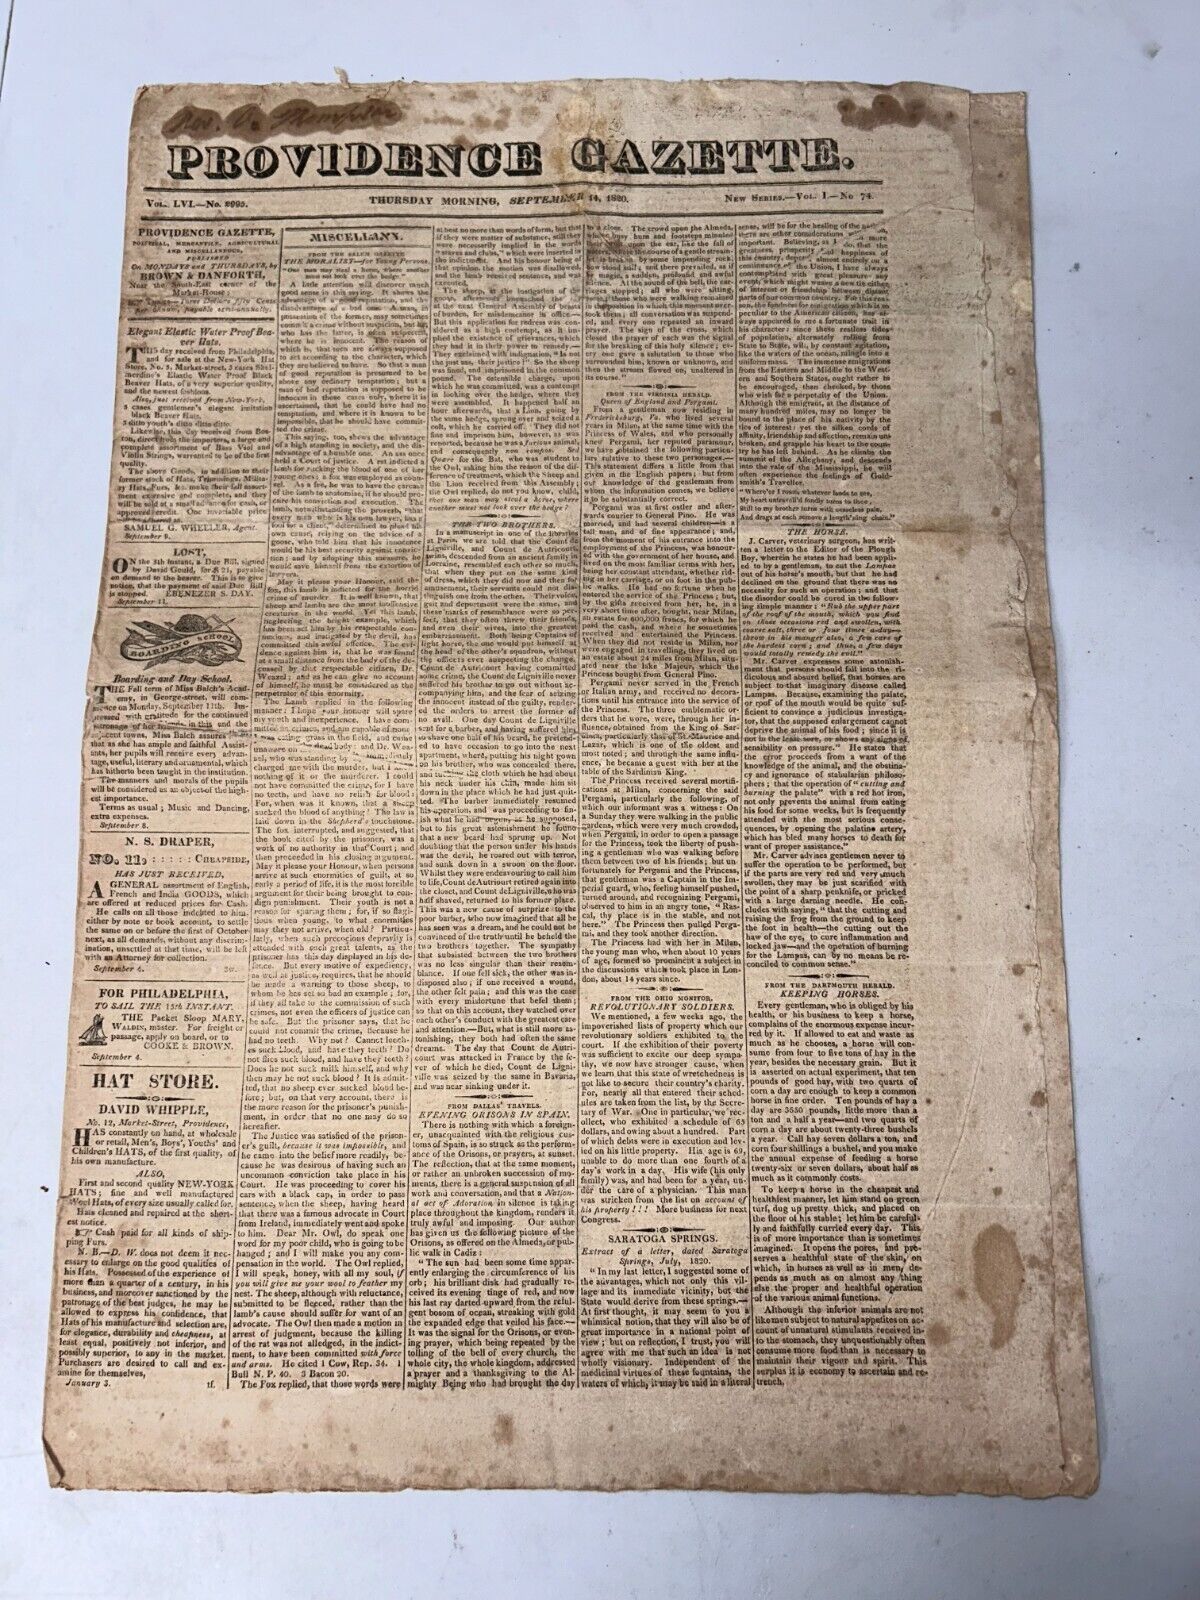 Providence Gazette September 14, 1820 Vol LVI No. 2995 (Vol 1 No. 74) Newspaper